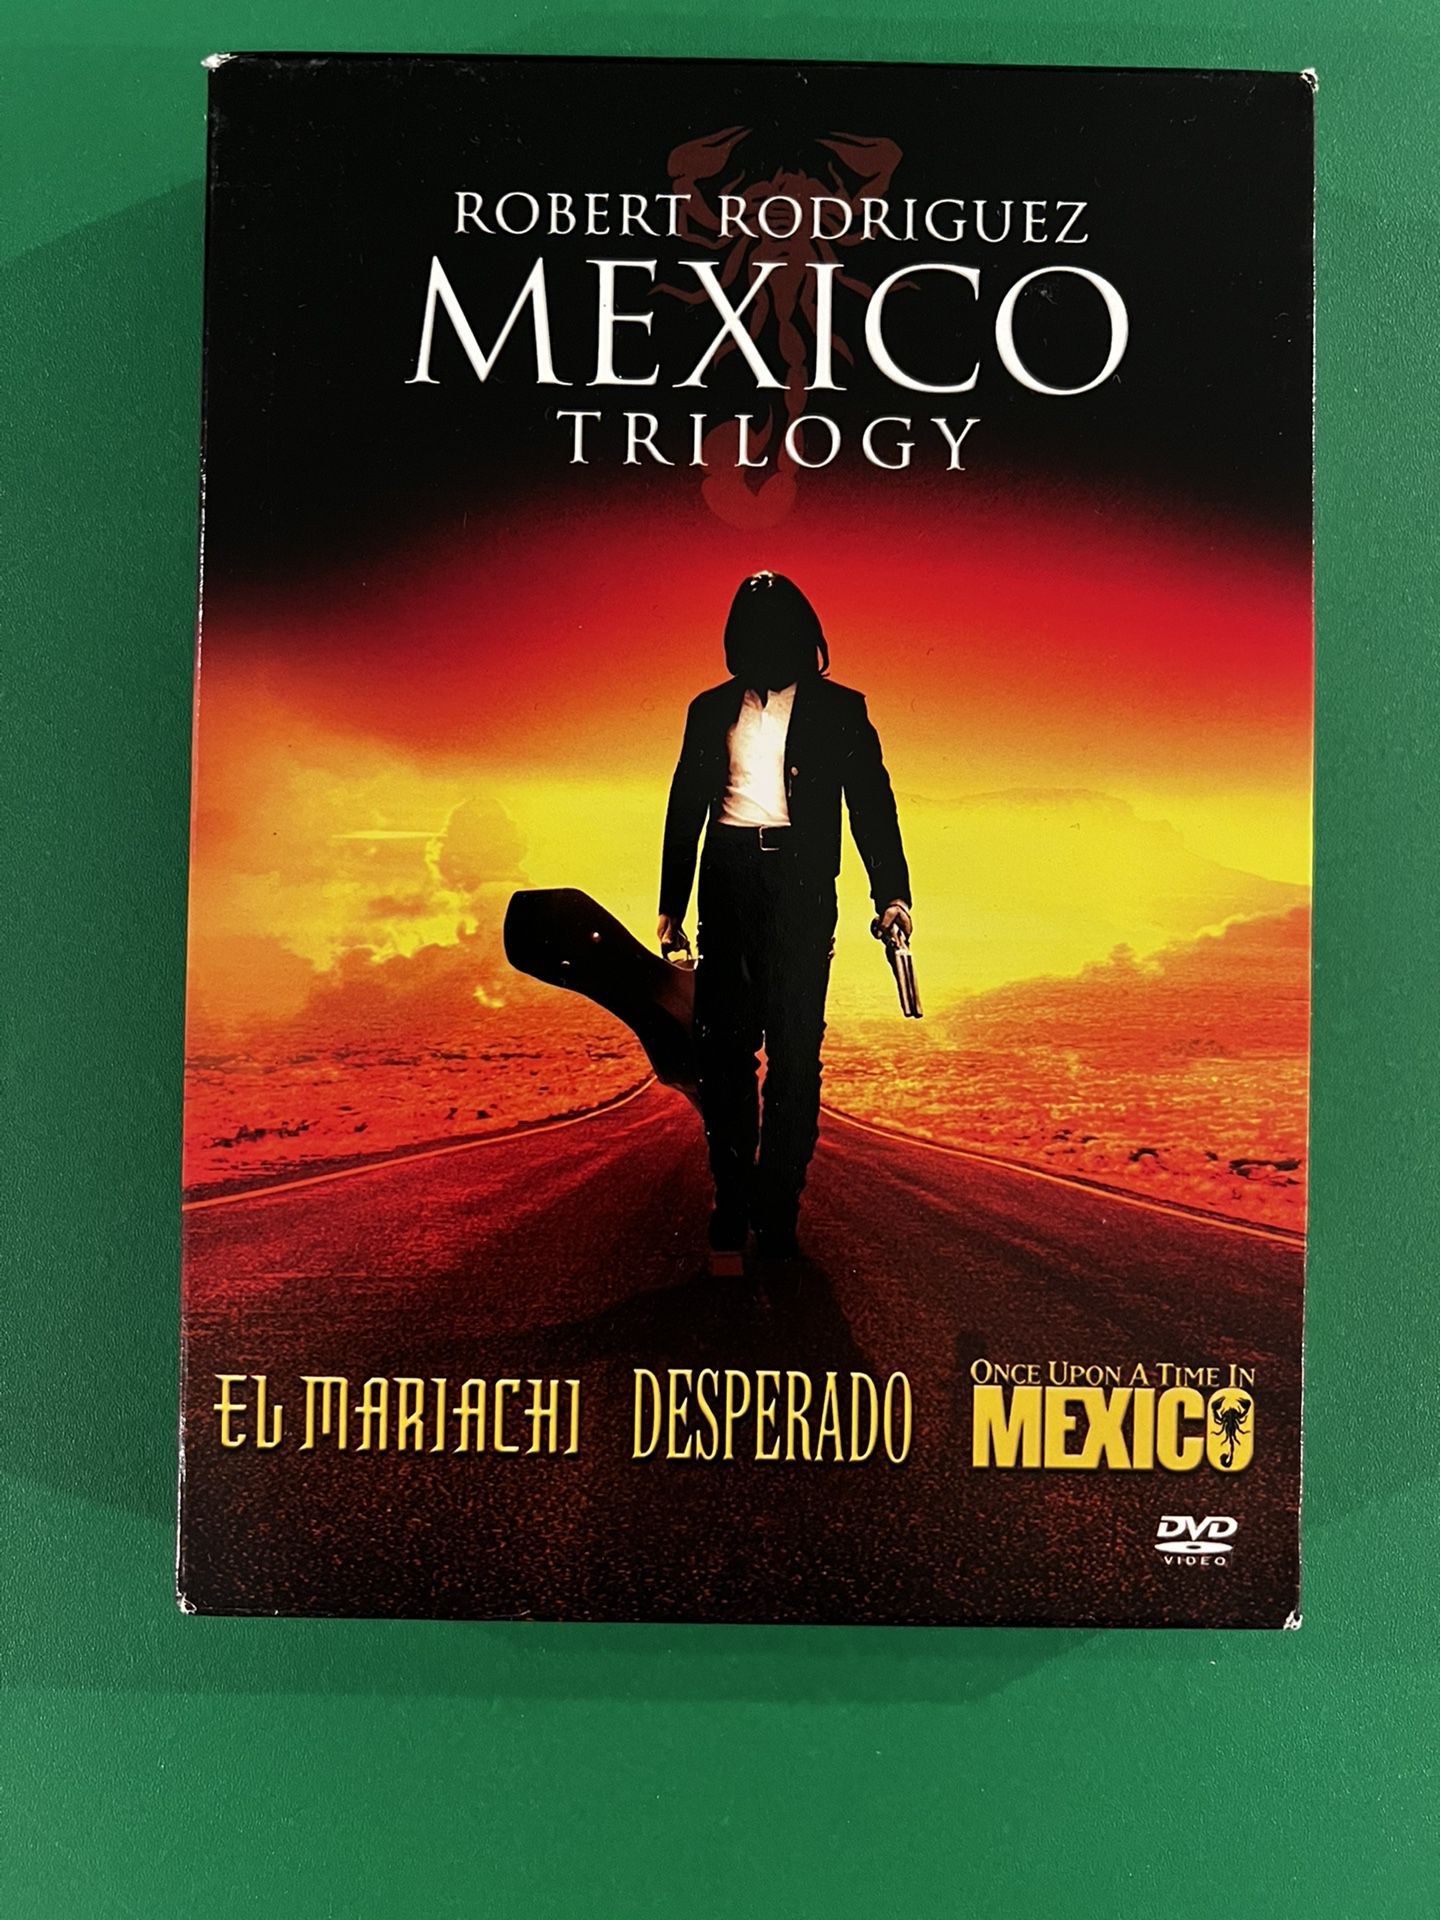 Desperado / Once Upon A Time In Mexico